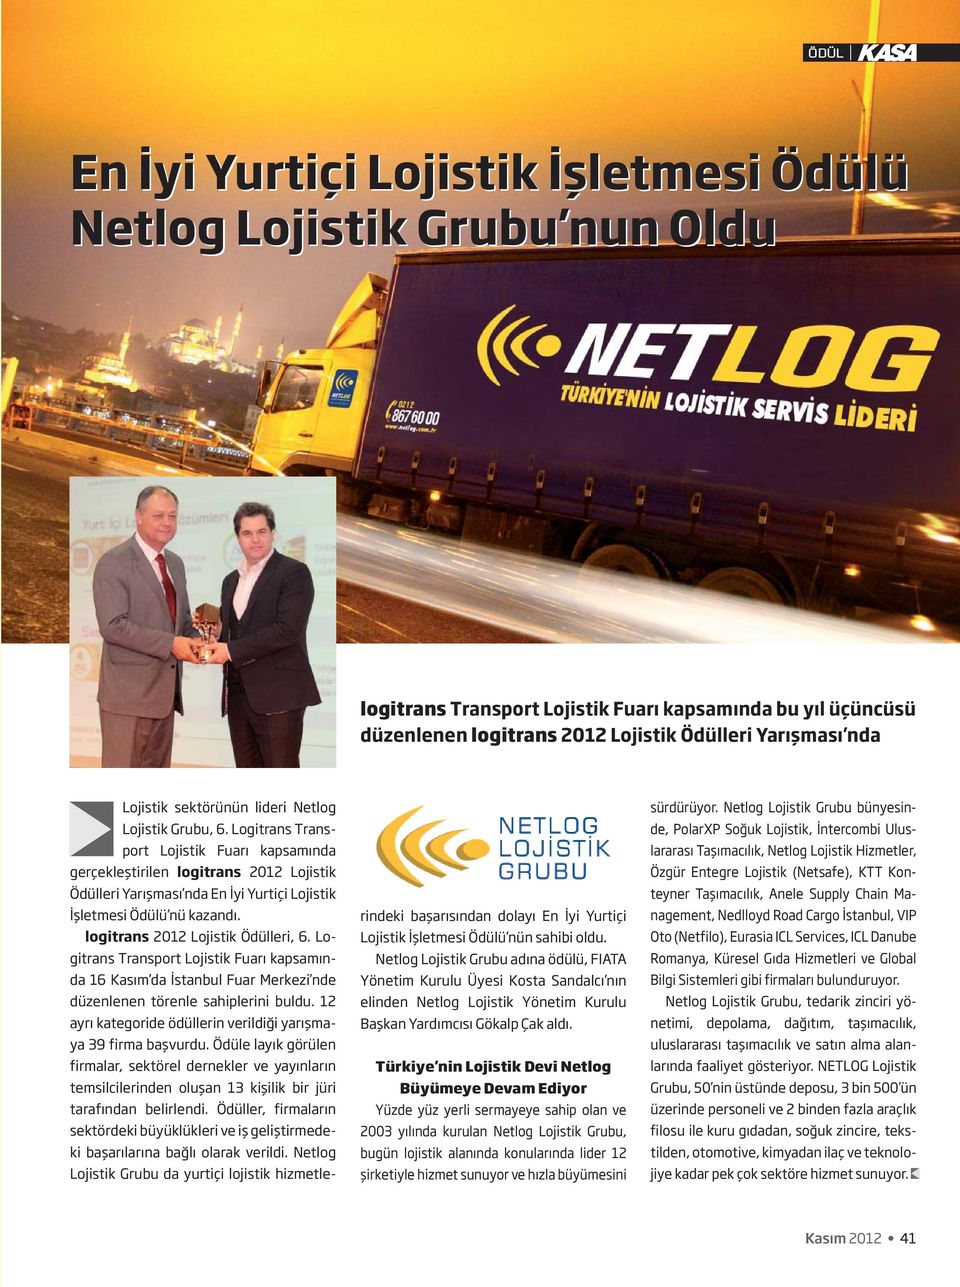 Logitrans Transport Lojistik Fuarı kapsamında gerçekleştirilen logitrans 2012 Lojistik Ödülleri Yarışması nda En İyi Yurtiçi Lojistik İşletmesi Ödülü nü kazandı. logitrans 2012 Lojistik Ödülleri, 6.